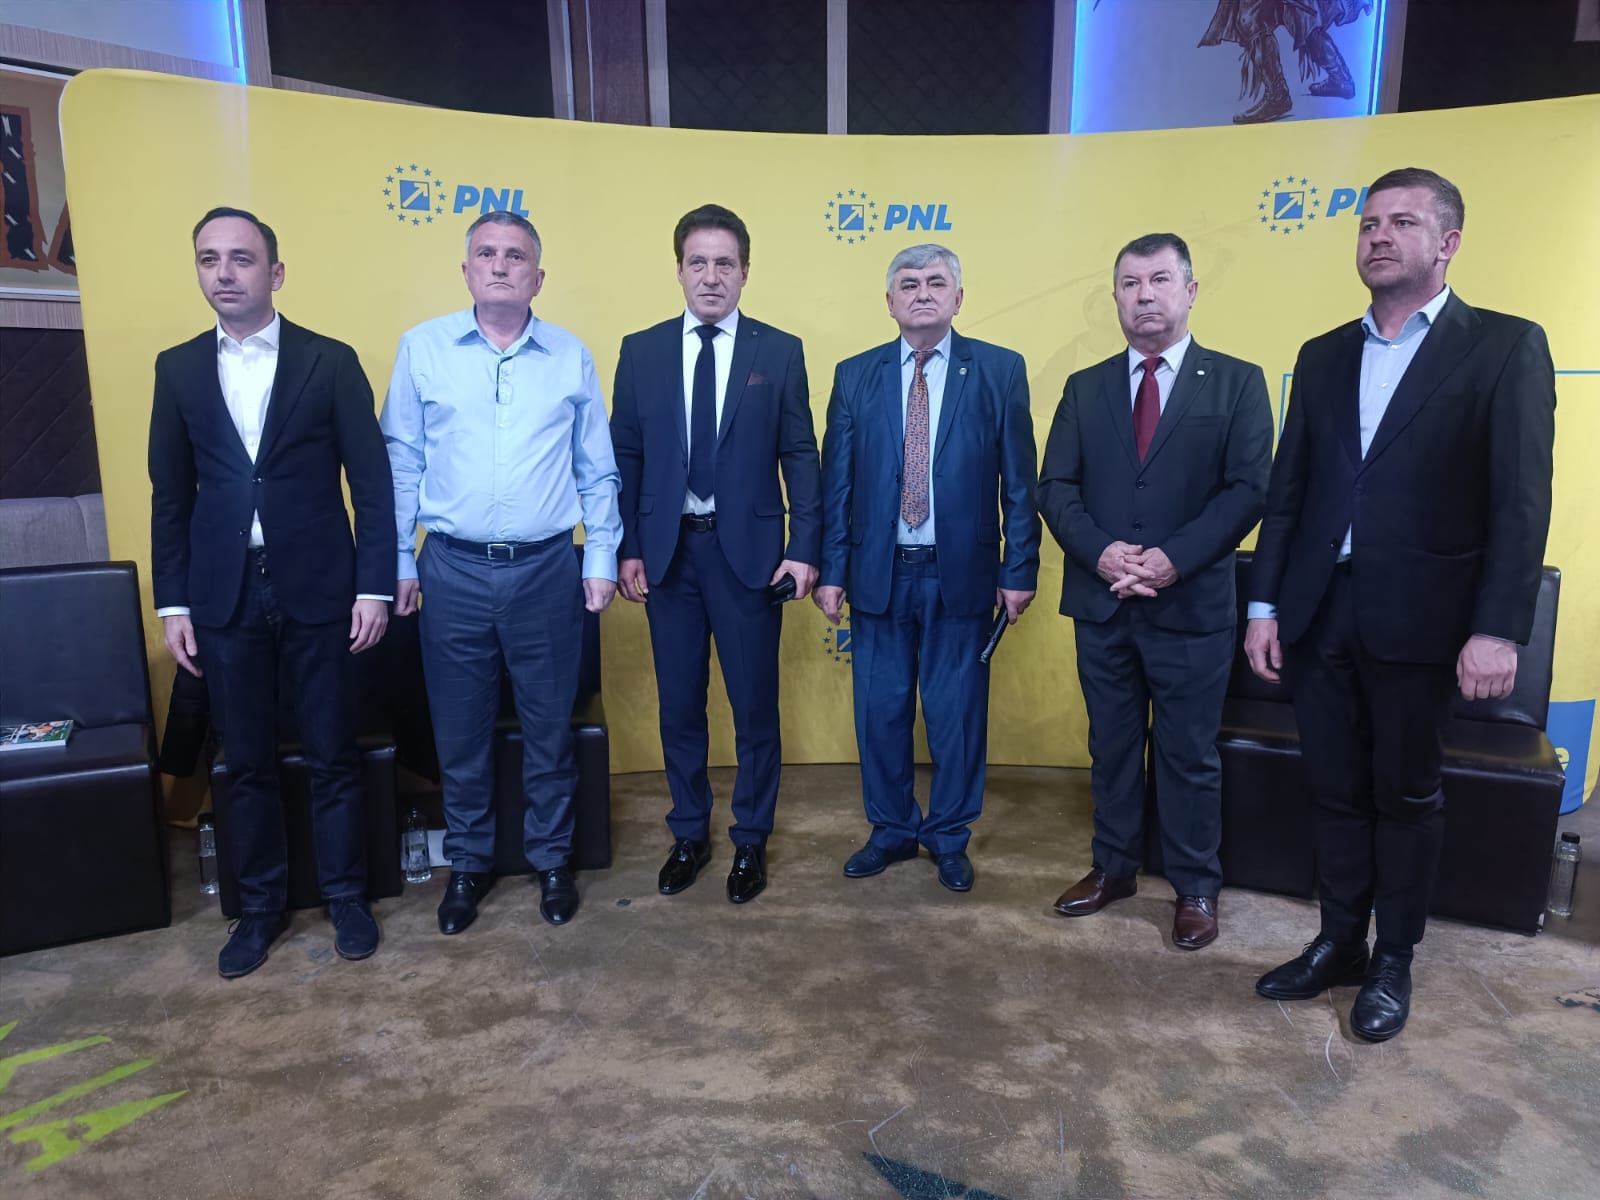 Deputatul Cristian Buican Nuță Dumitru candidatul PNL pentru funcția de primar Cernișoara